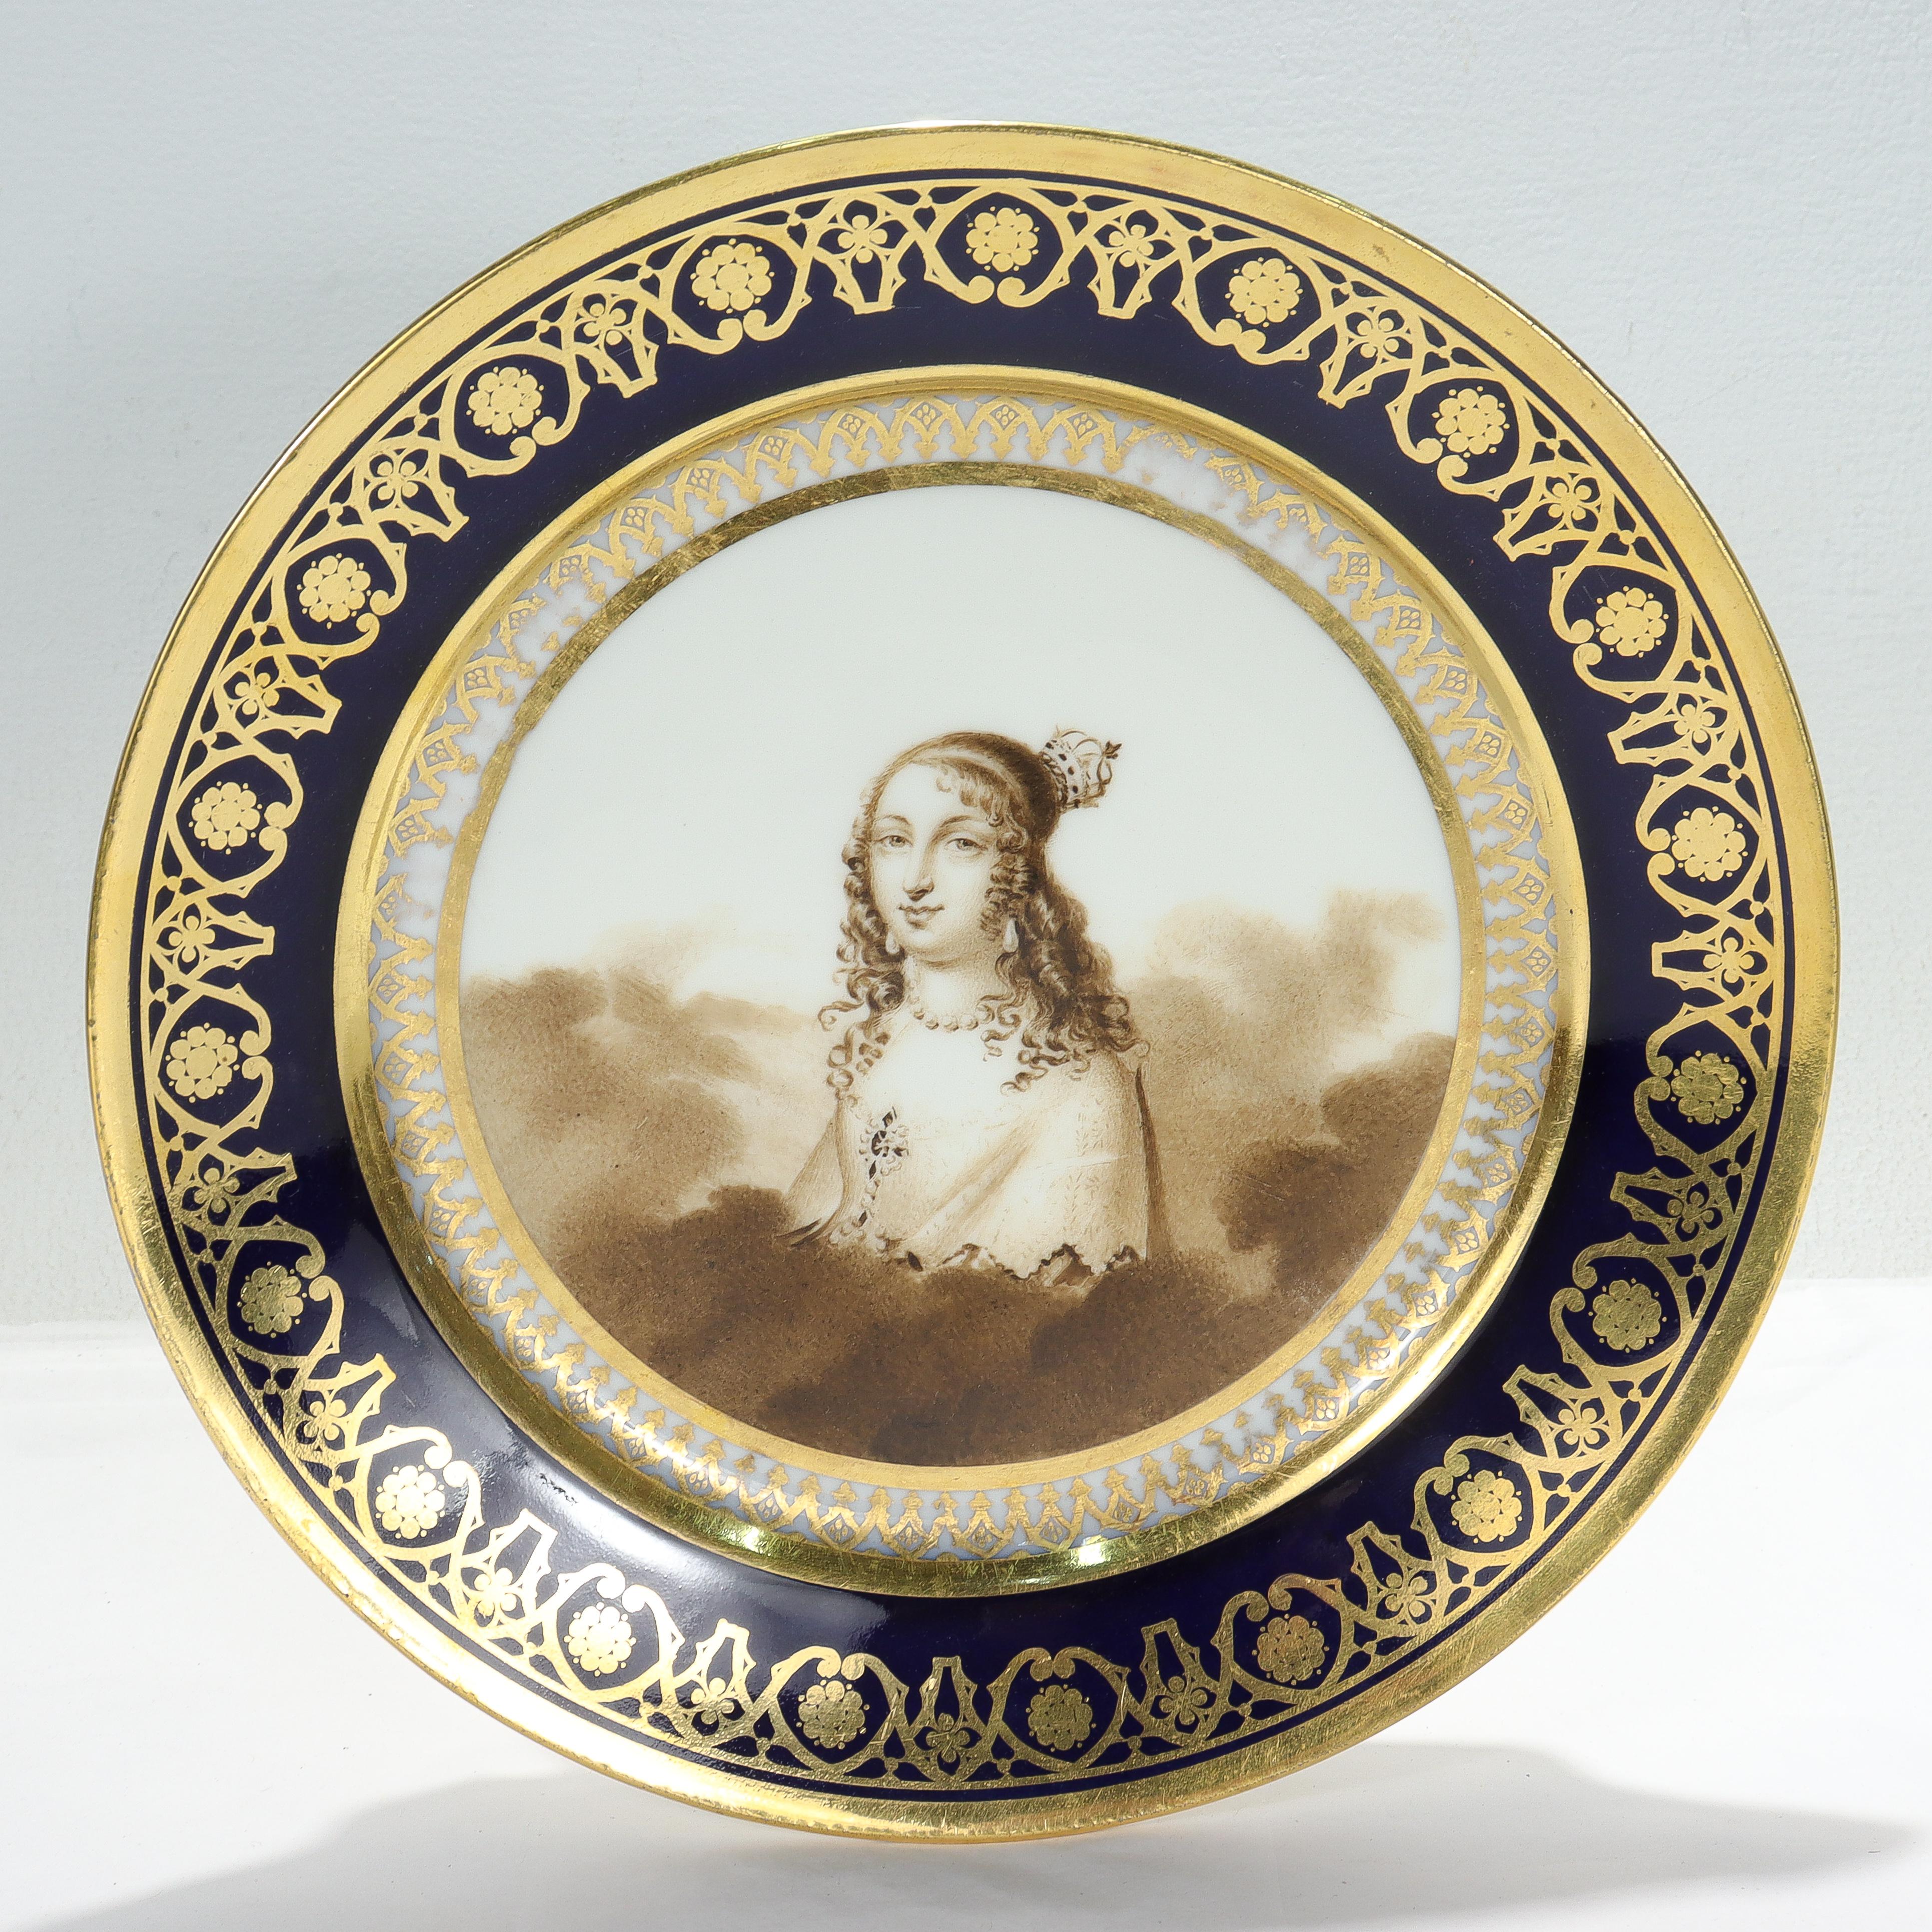 Une belle assiette de cabinet en porcelaine suisse de Nyon peinte à la main avec un bord bleu cobalt.

Avec une bordure cobalt richement dorée et décorée au centre d'un portrait peint à la main d'une dame avec une couronne parmi des nuages dans des